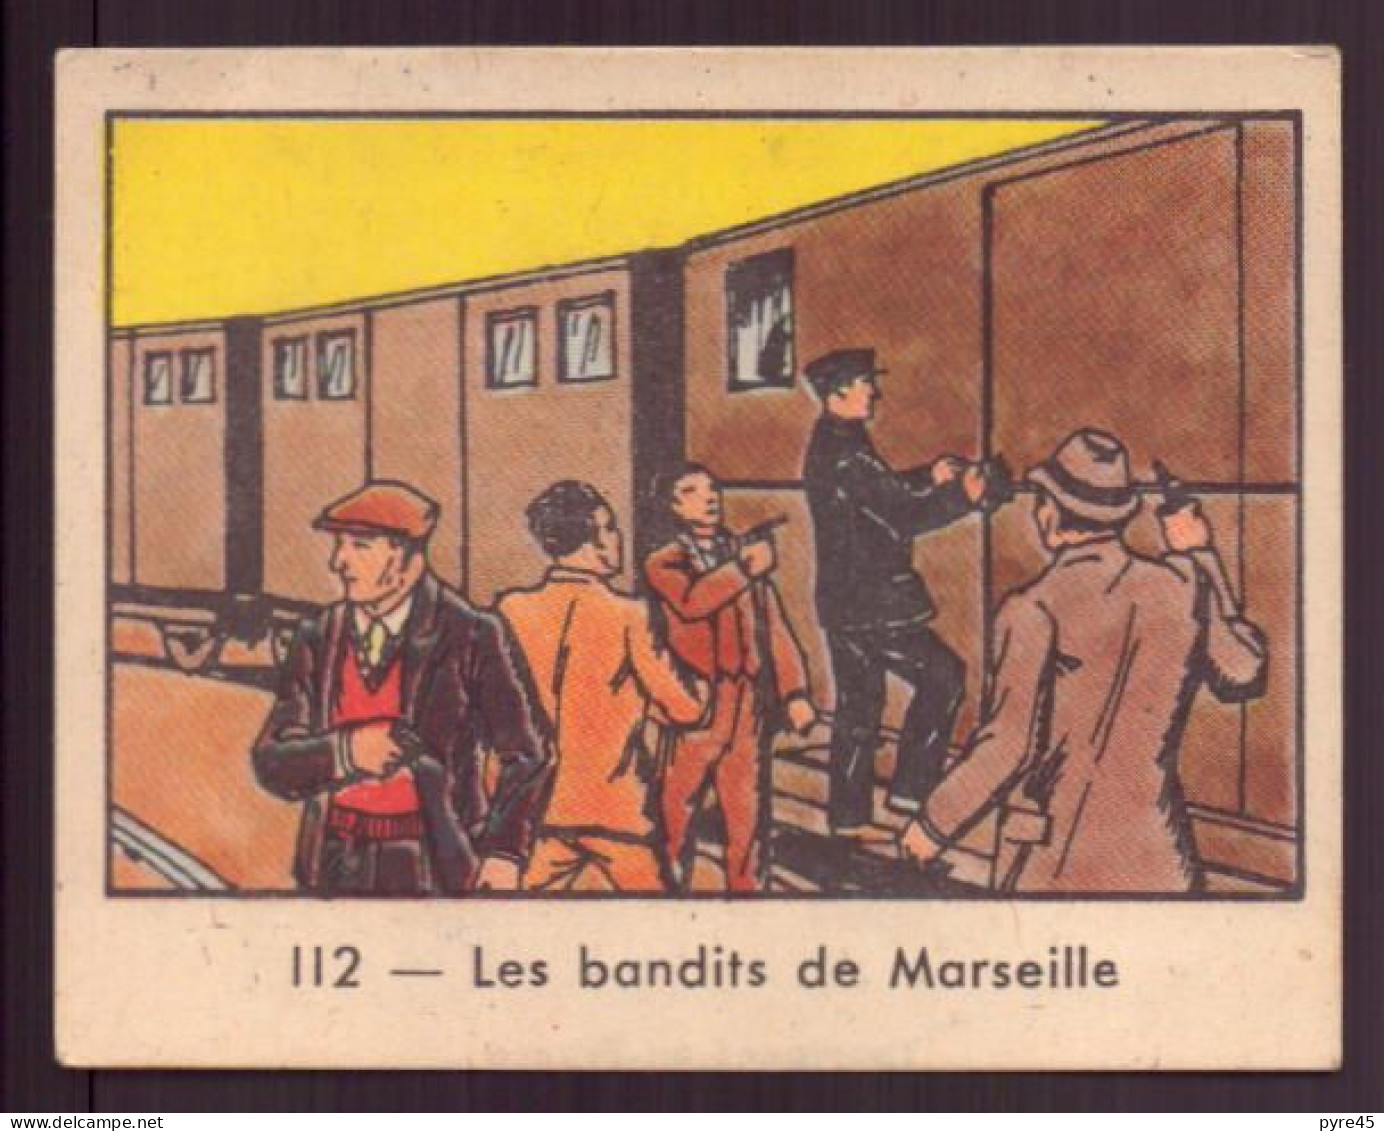 Image Publicitaire " Globo " N° 112, Polices D'états Contre Les Gangsters, Les Bandits De Marseille - Other & Unclassified